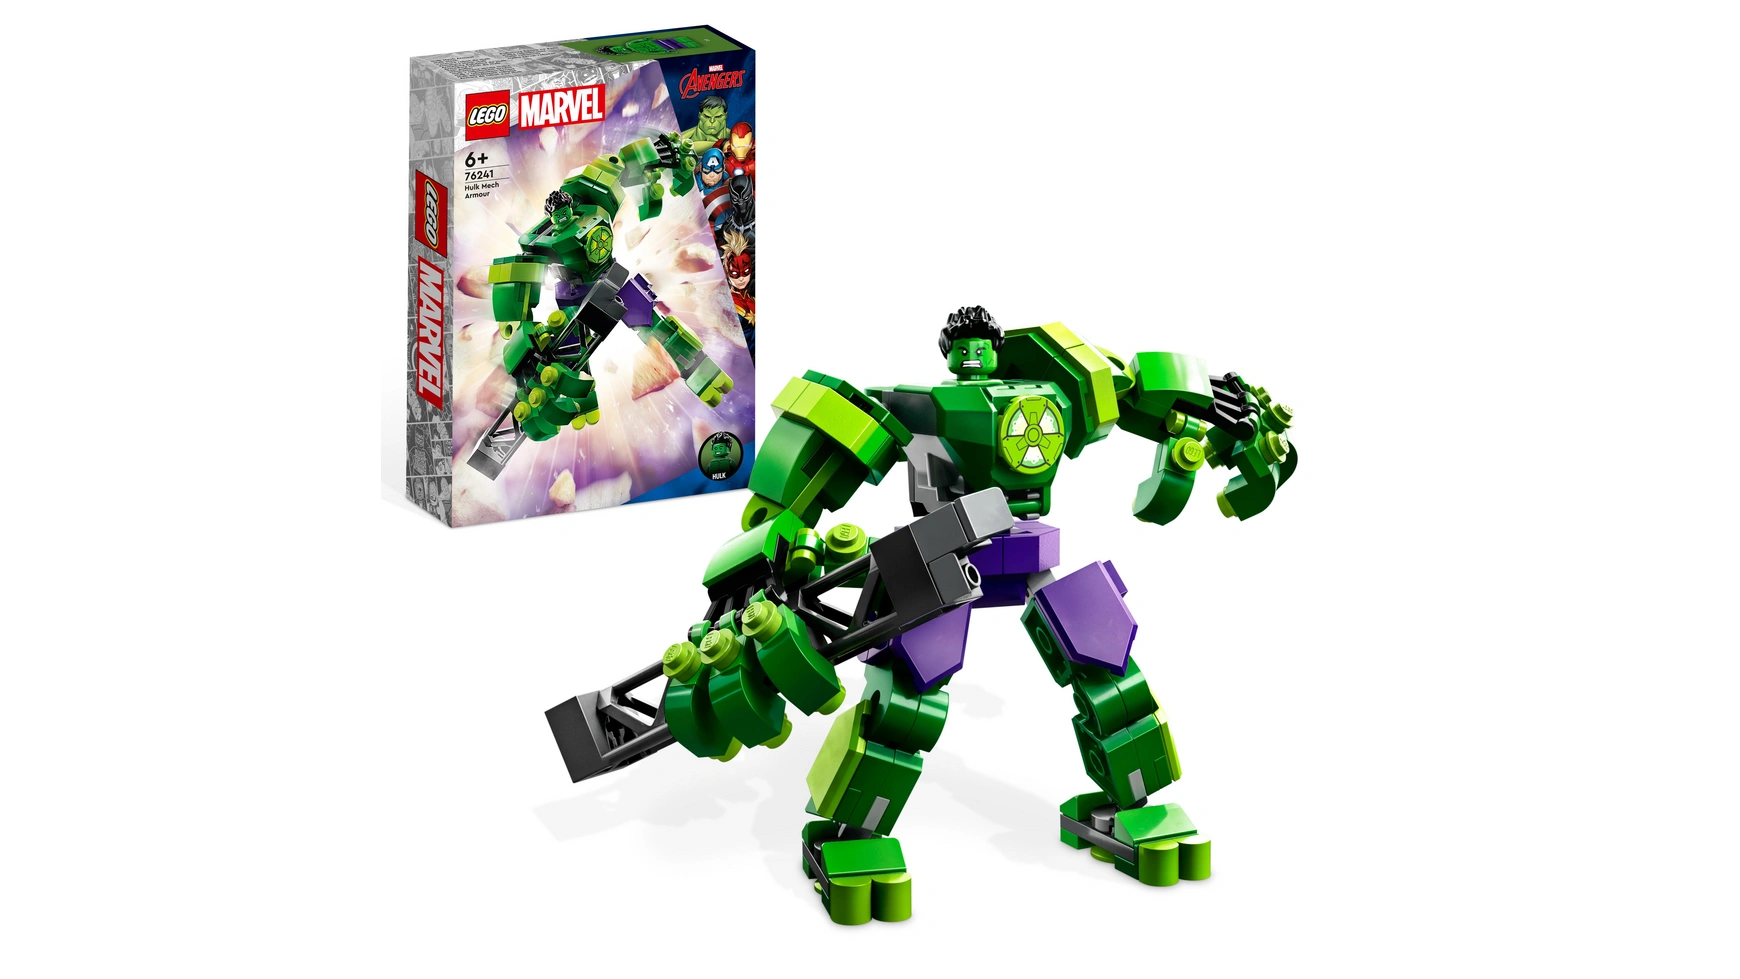 Lego Marvel Набор роботов Халка, игрушечная фигурка Мстителей